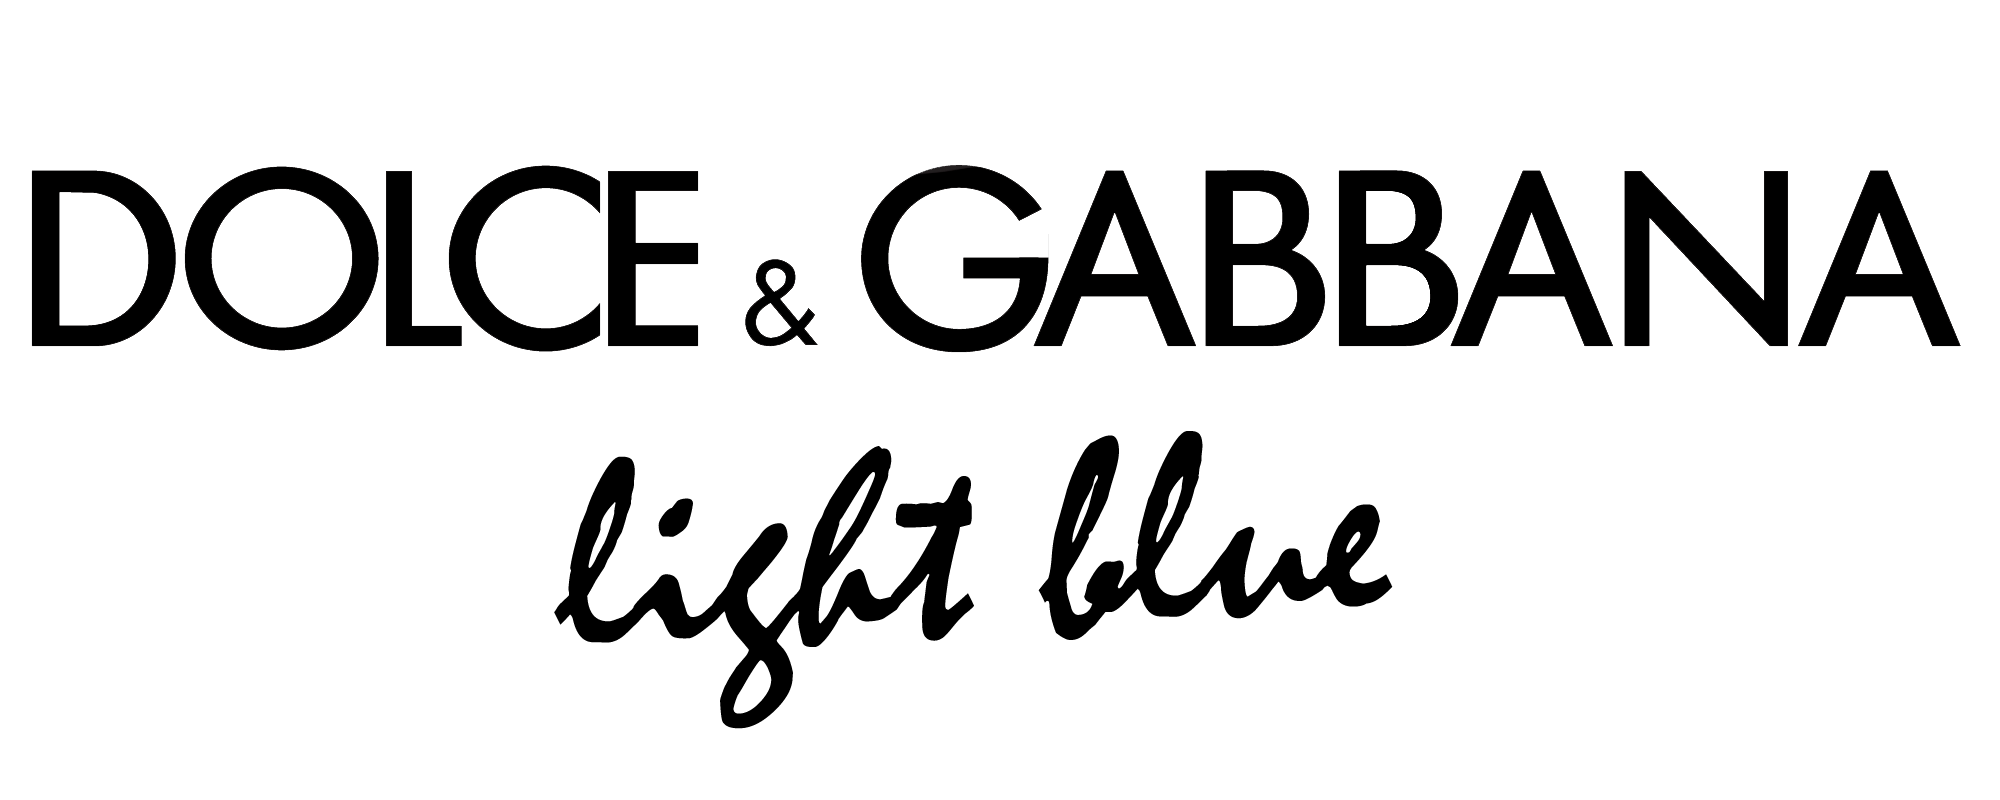 Dolce & Gabbana-Logo